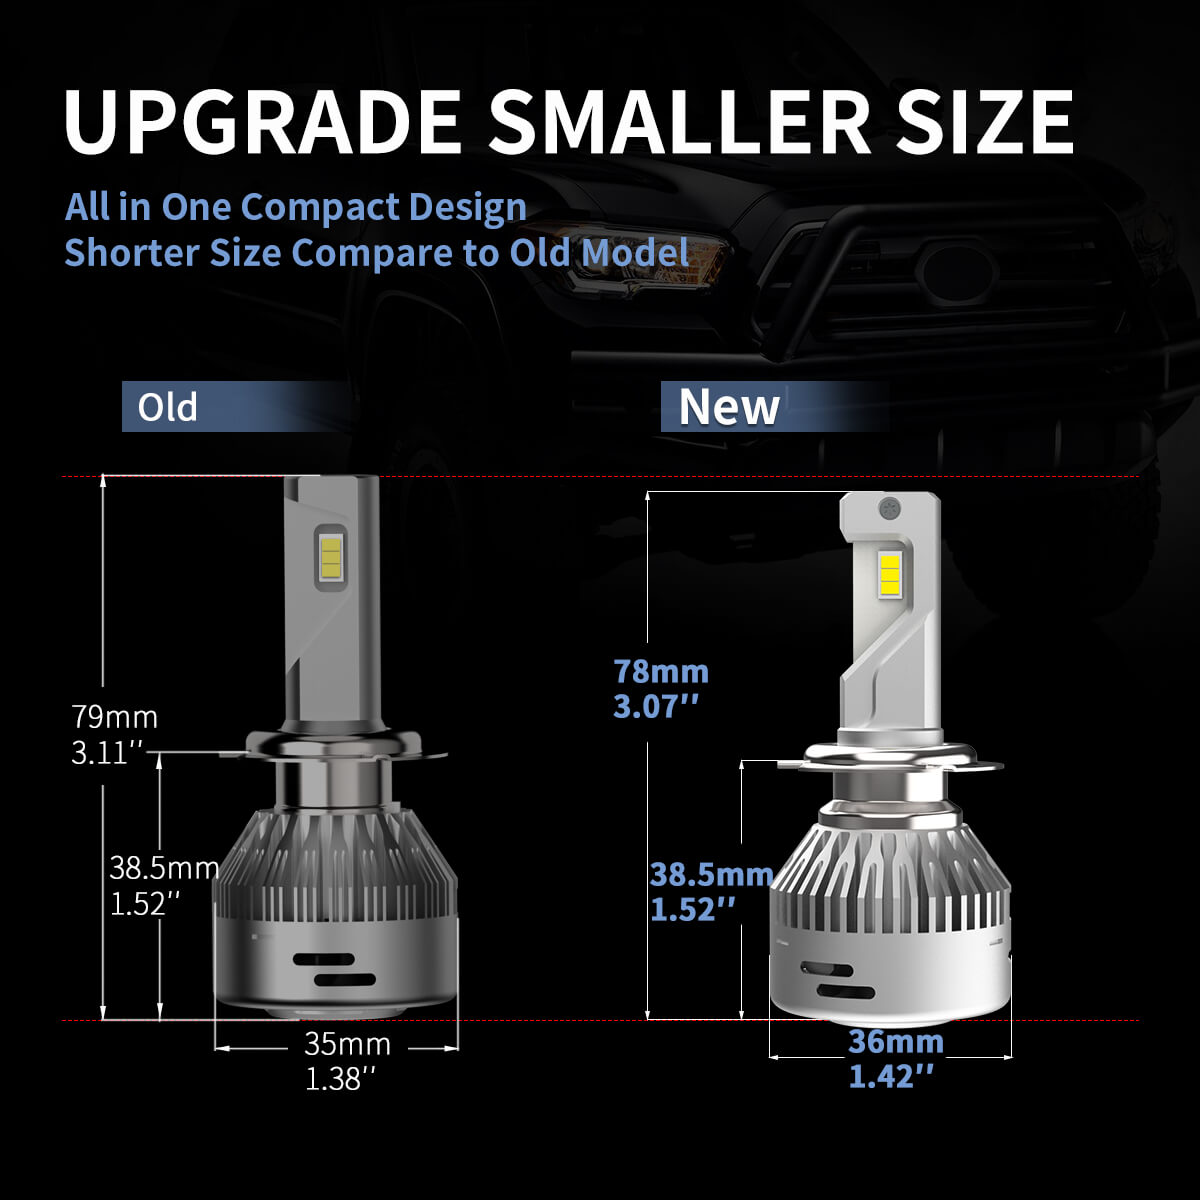 Kit ampoules H7 LED Spécial VW, Audi, Mercedes - Port Offert